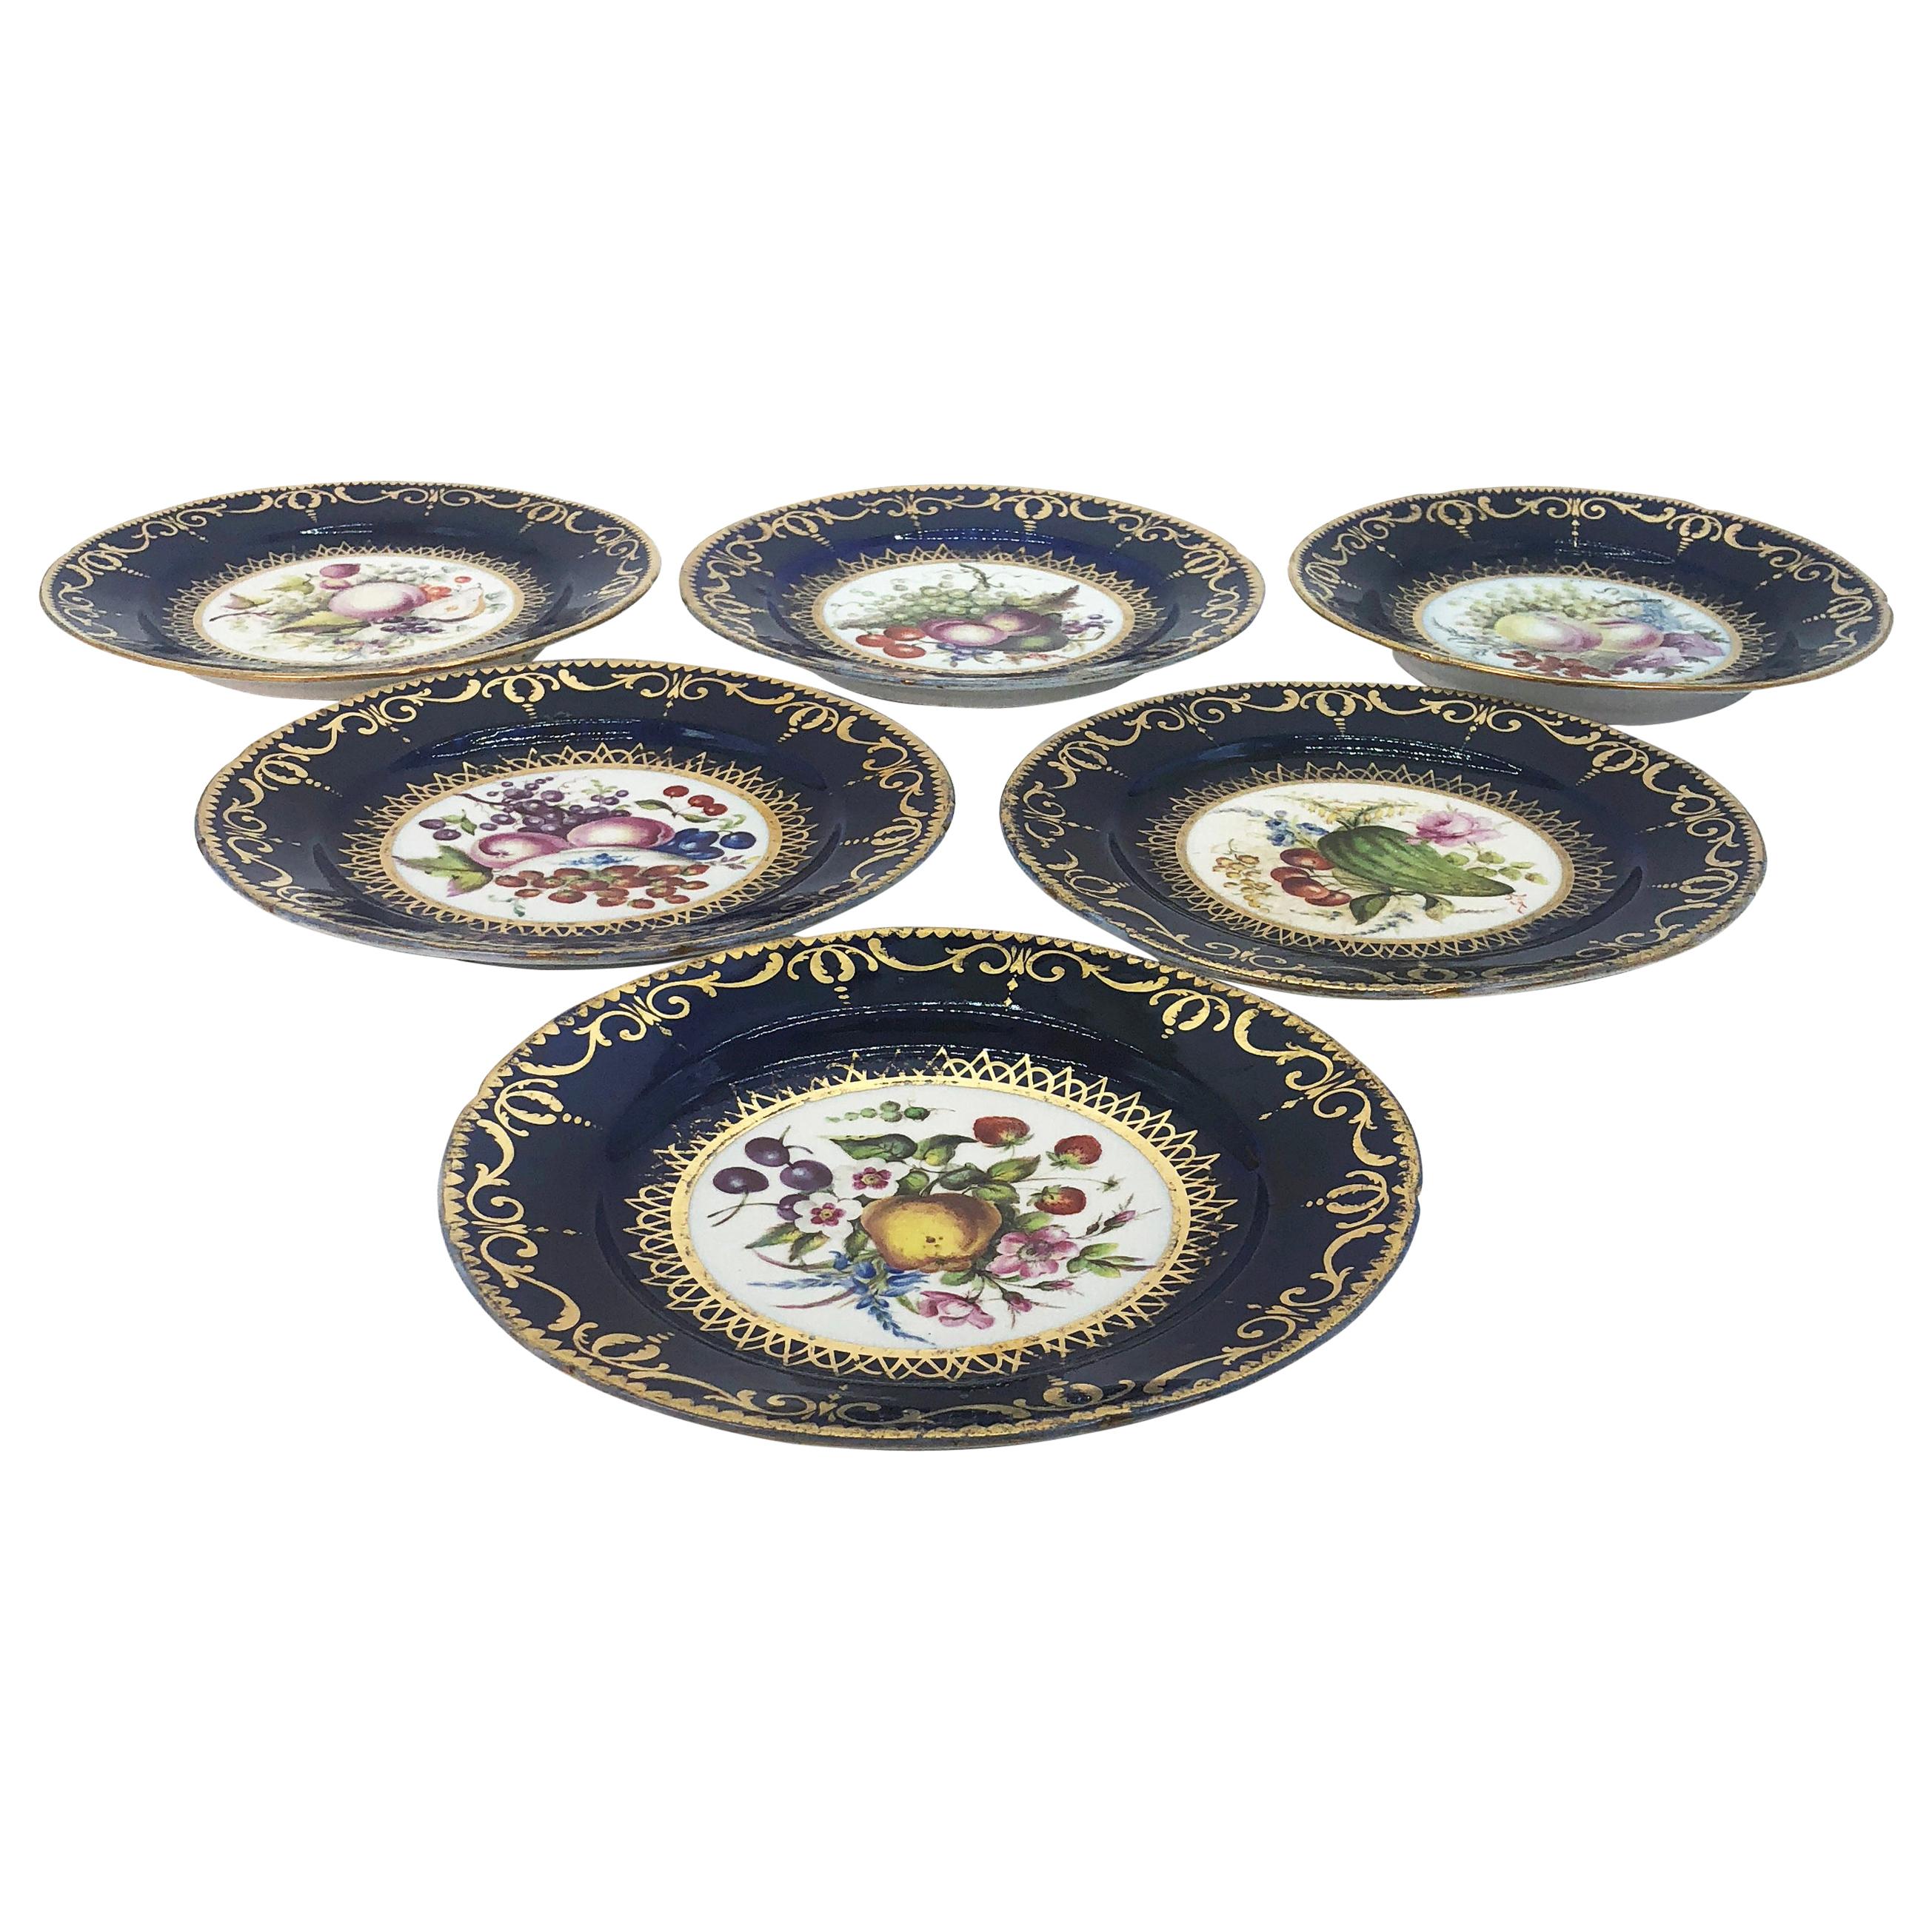 Six assiettes en porcelaine de style Régence peintes à la main par Coalport, vers 1805